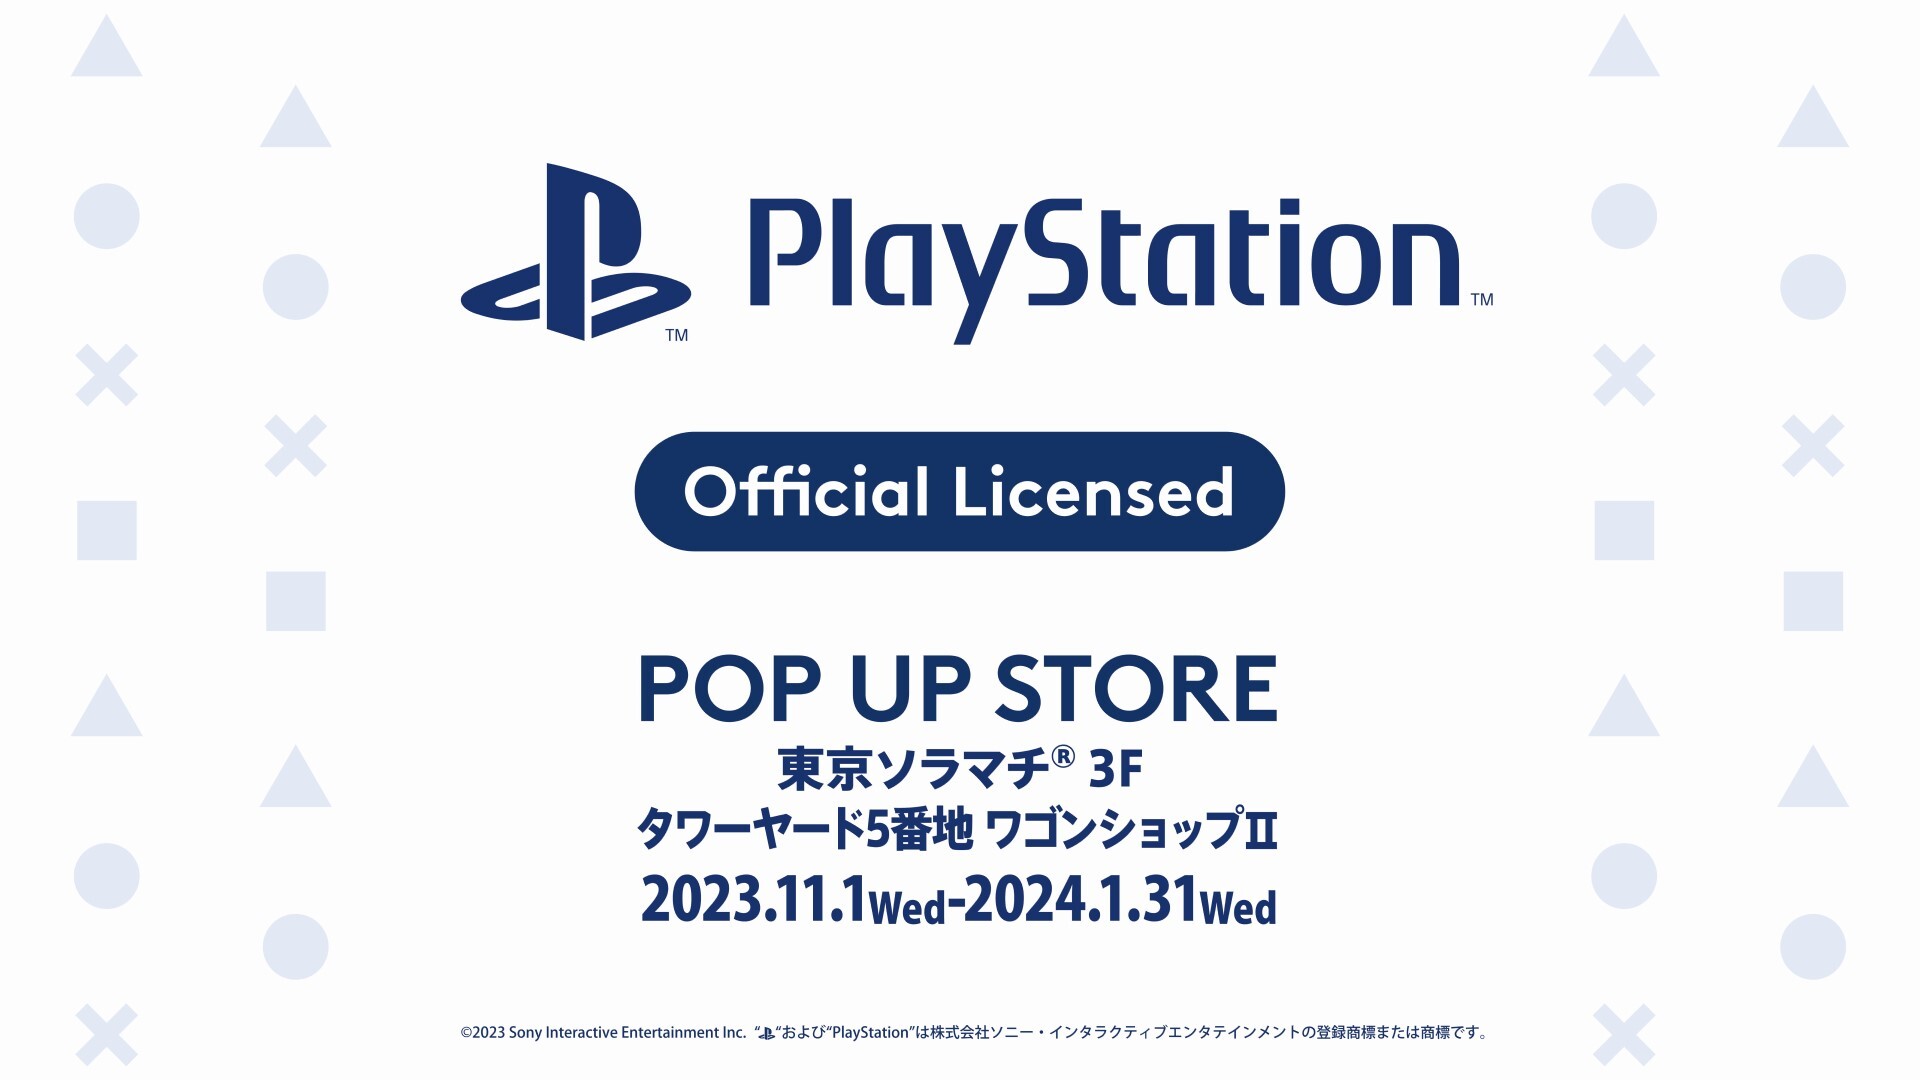 PlayStation(TM) POP UP STOREを11月1日(水)より
東京ソラマチ(R) 3階 タワーヤード 5番地にて開催！